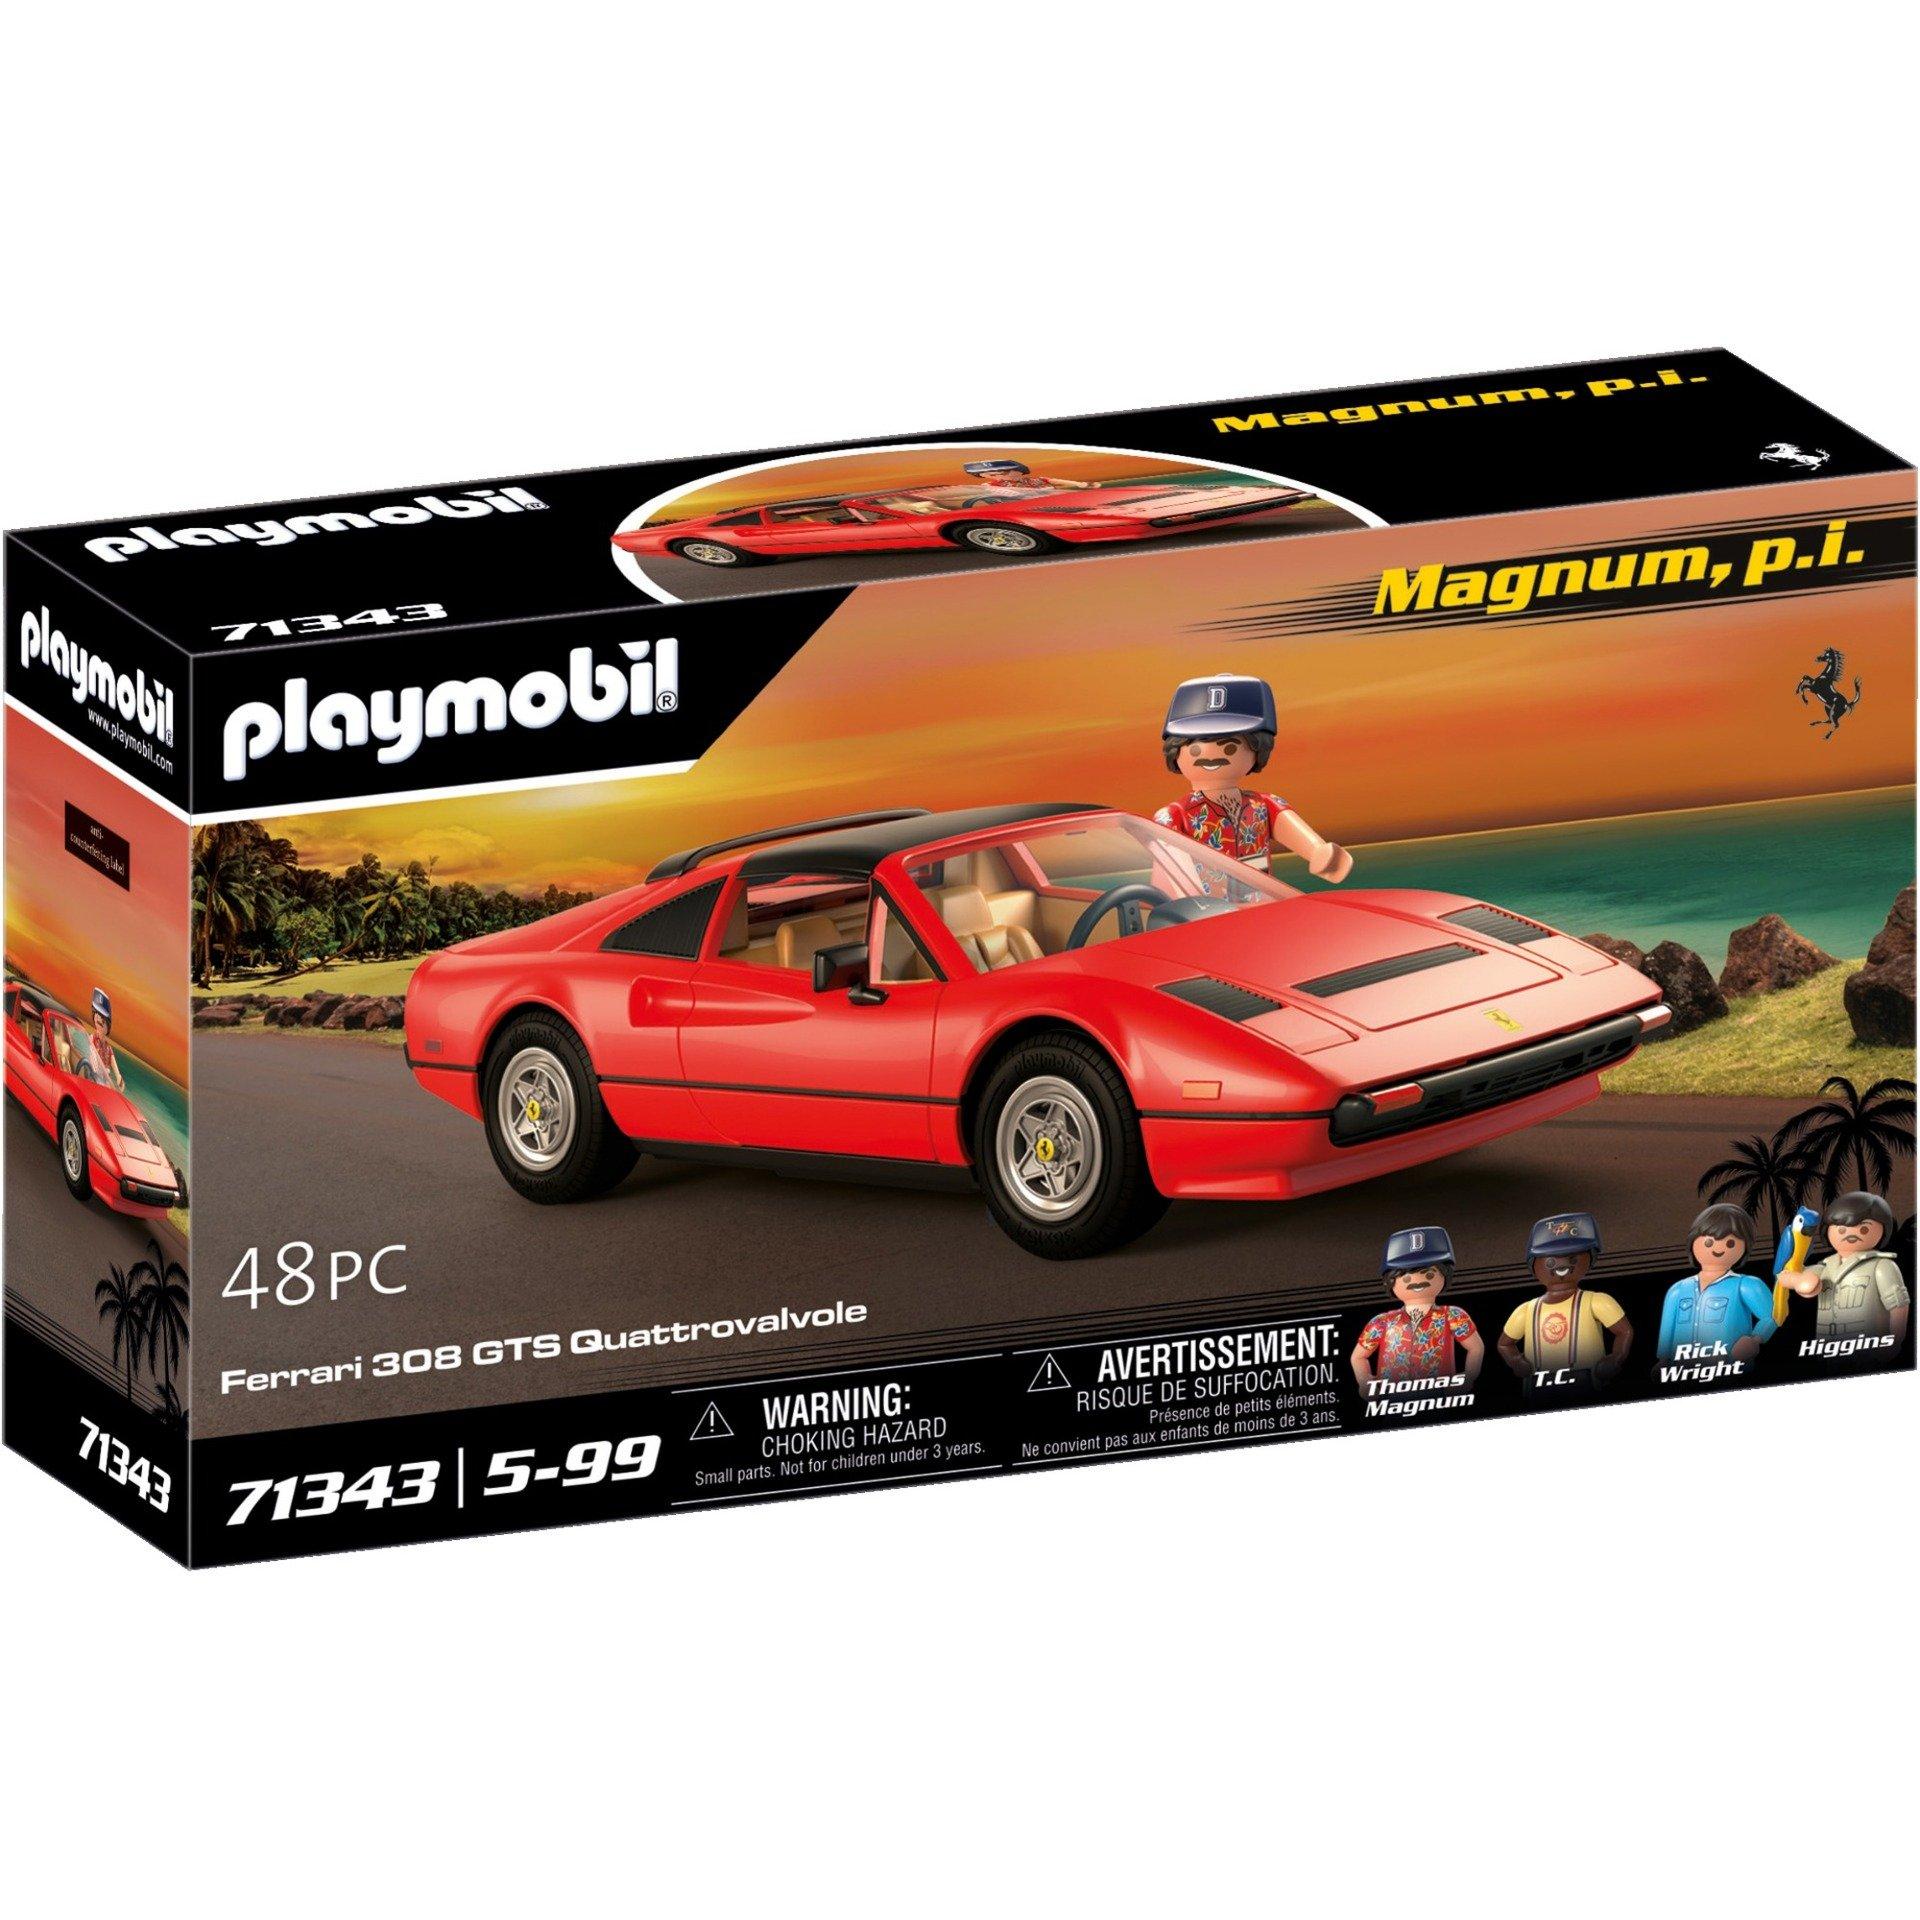 Playmobil 71343 - Magnum, p.i.: Ferrari 308 GTS Quattrovalvole